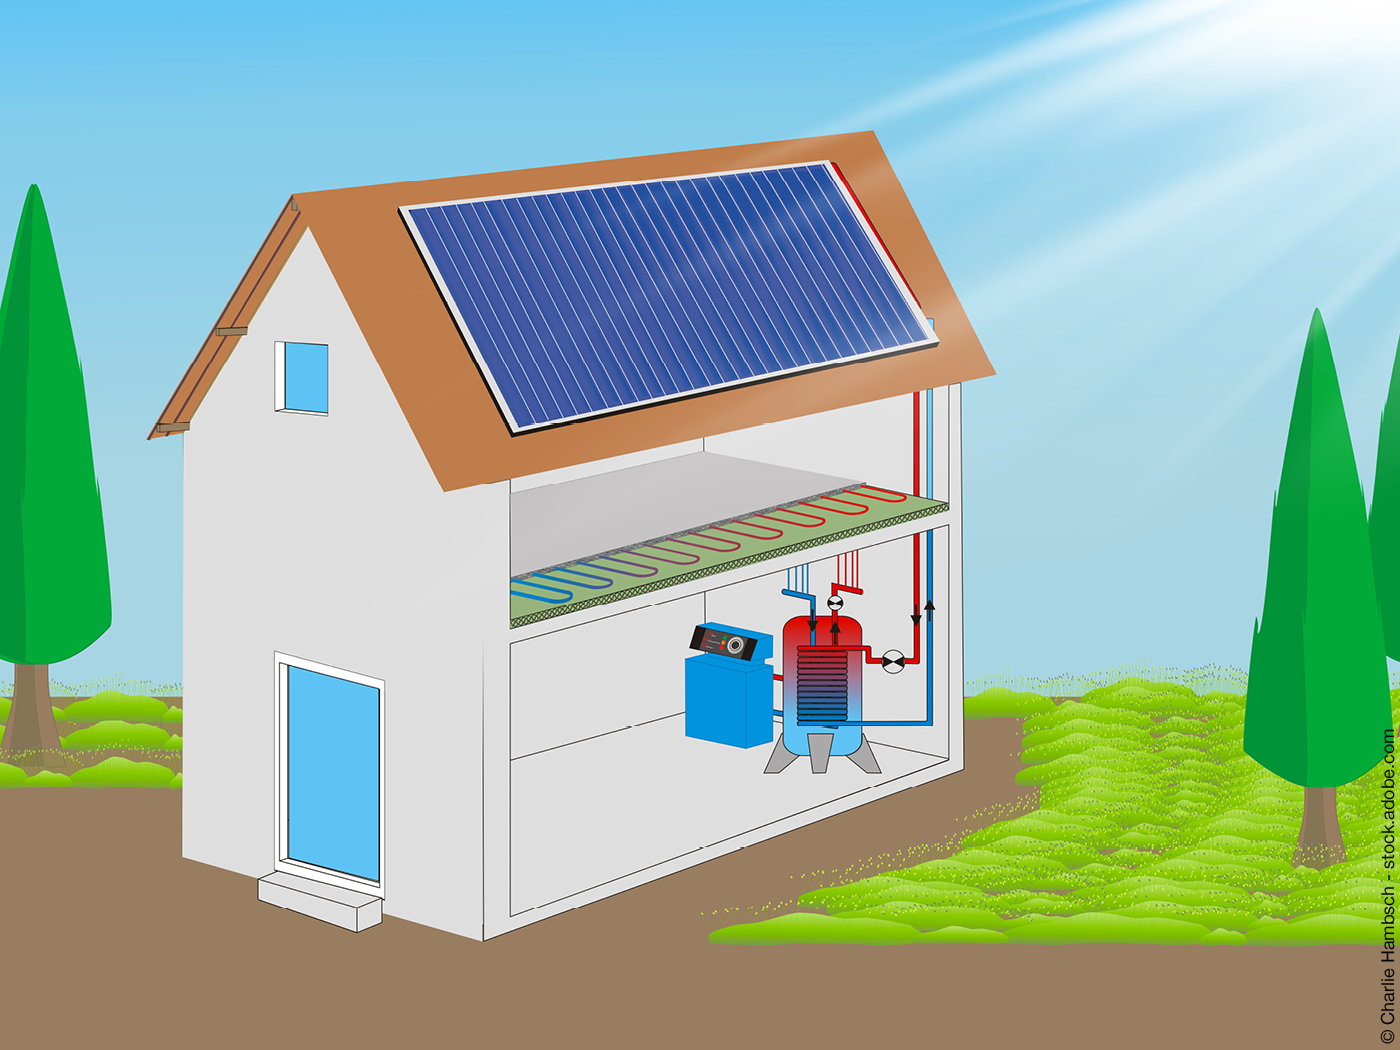 Grafik zu Solarthermie, Fußbodenheizung und Heizkessel